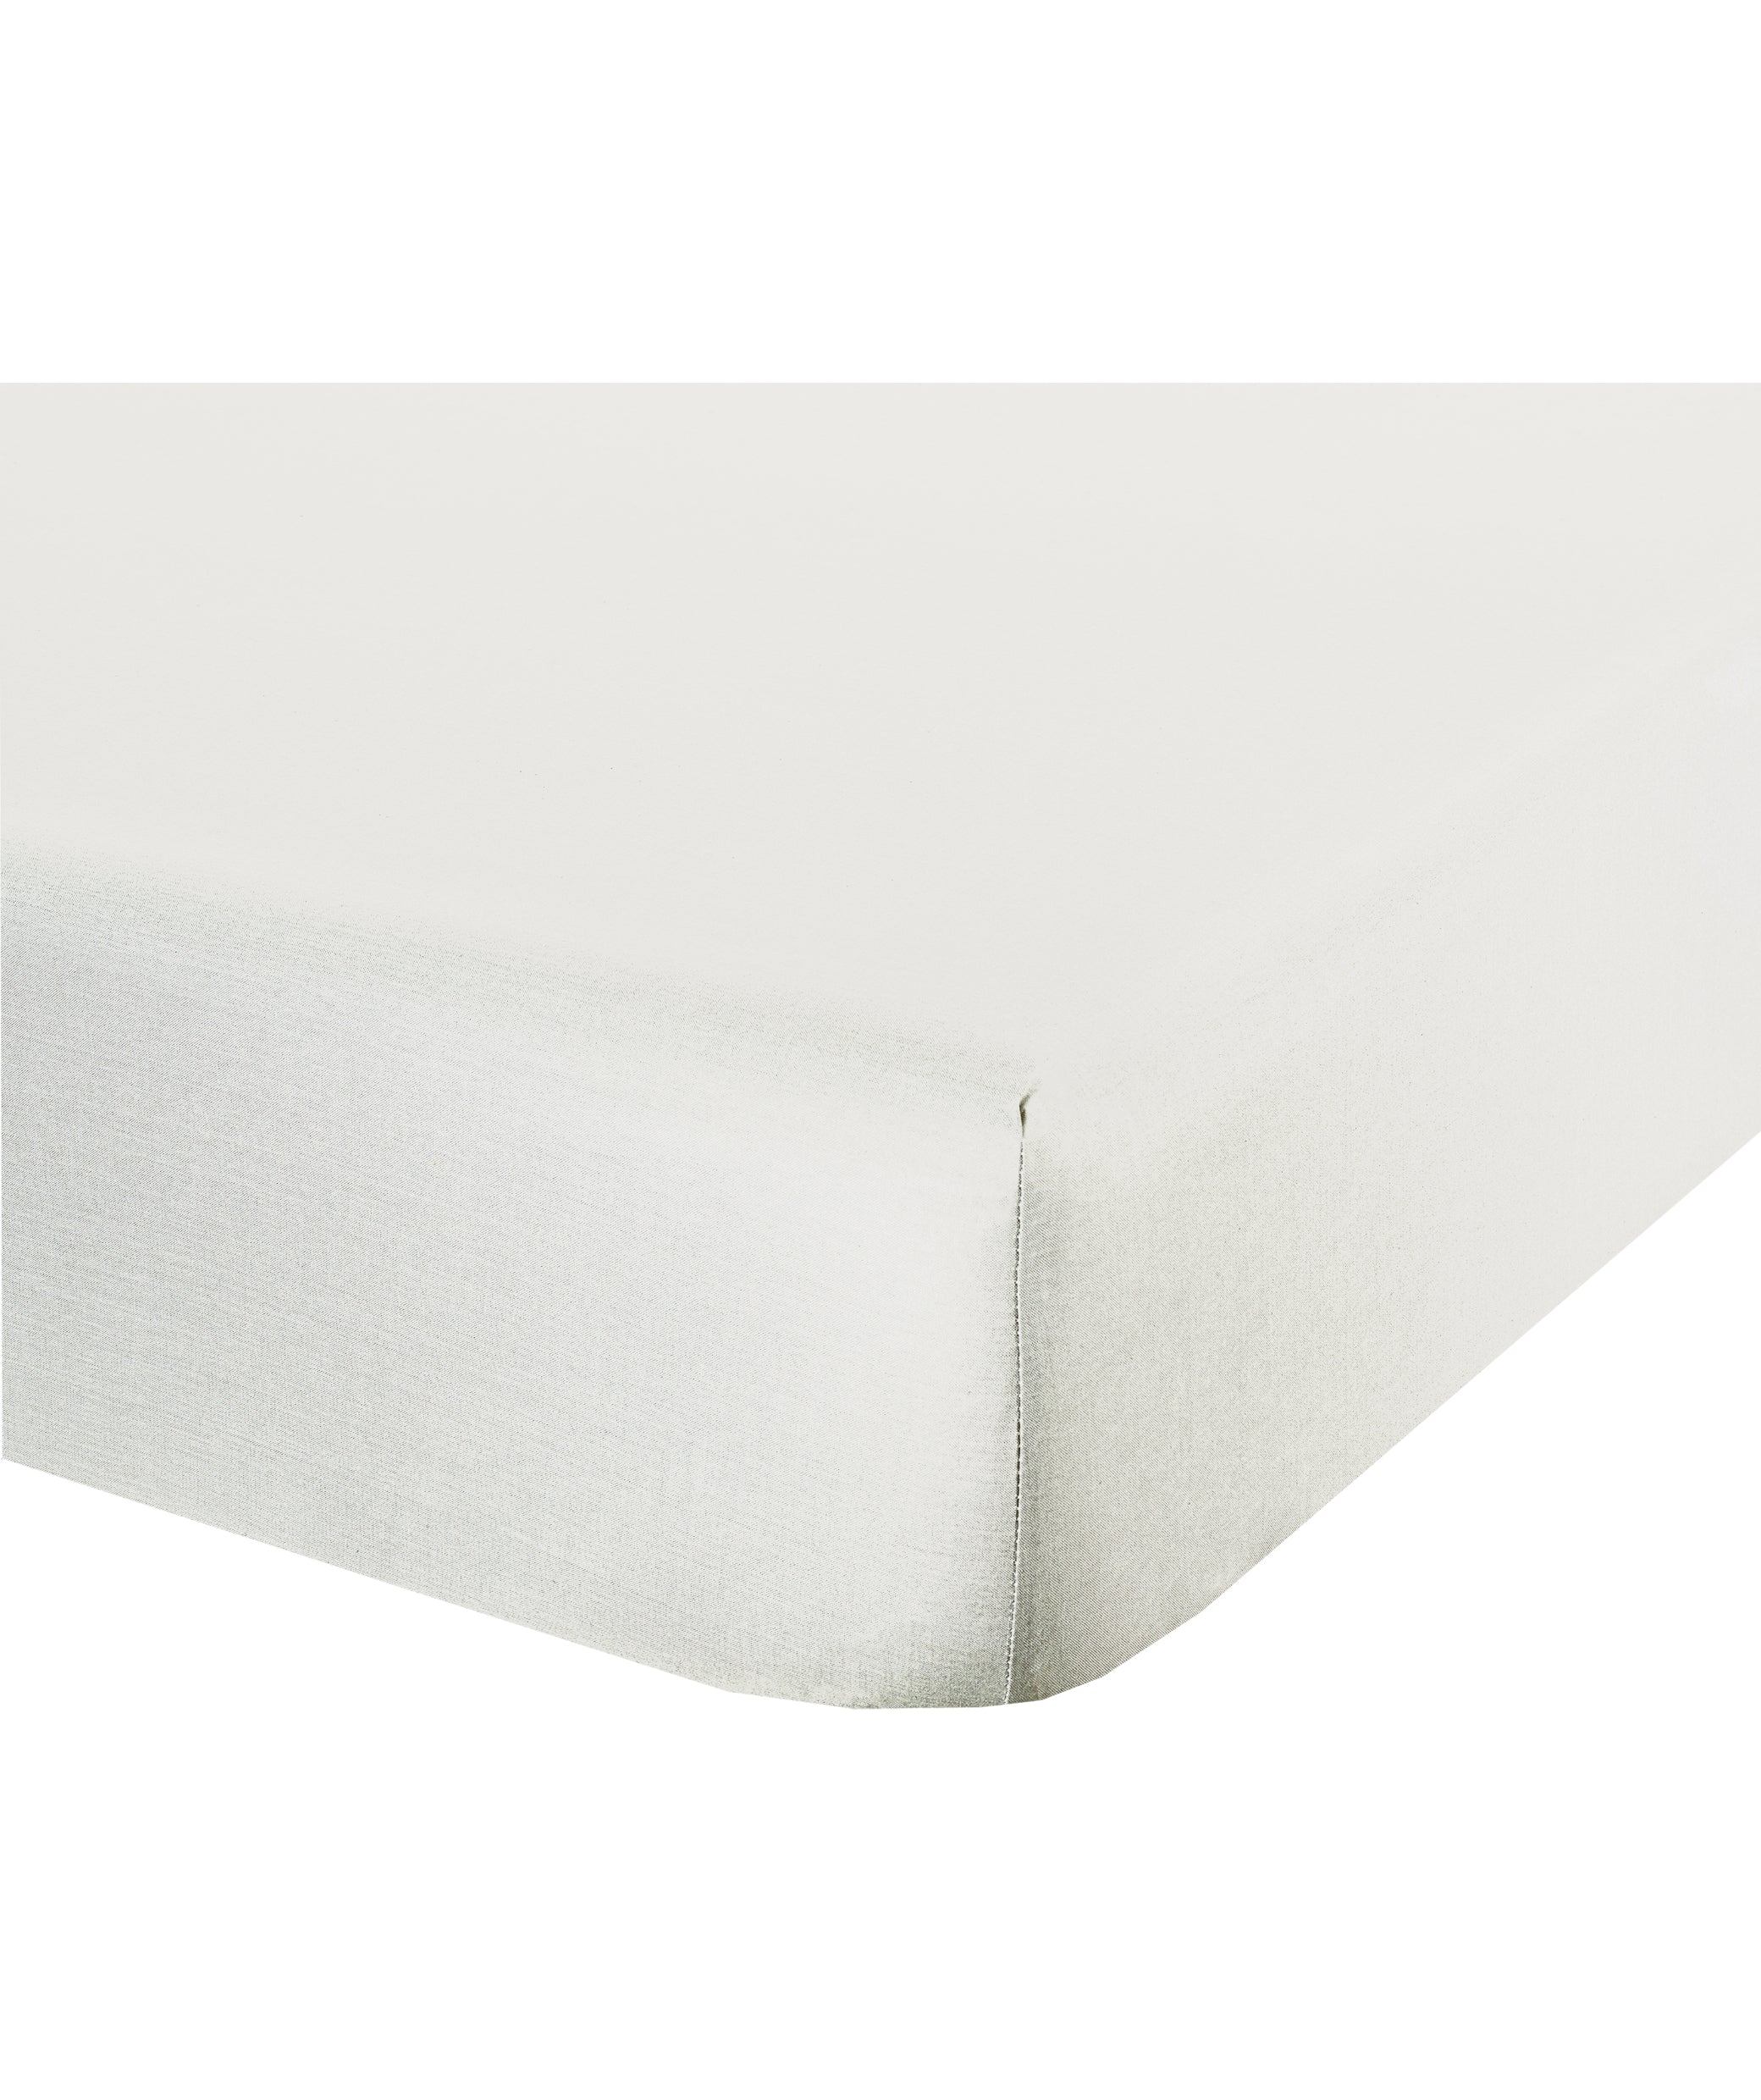 Completo letto lenzuola federe bifaccia doublef ace stampa digitale in cotone made in italy FARFALLE BIANCO/NERO